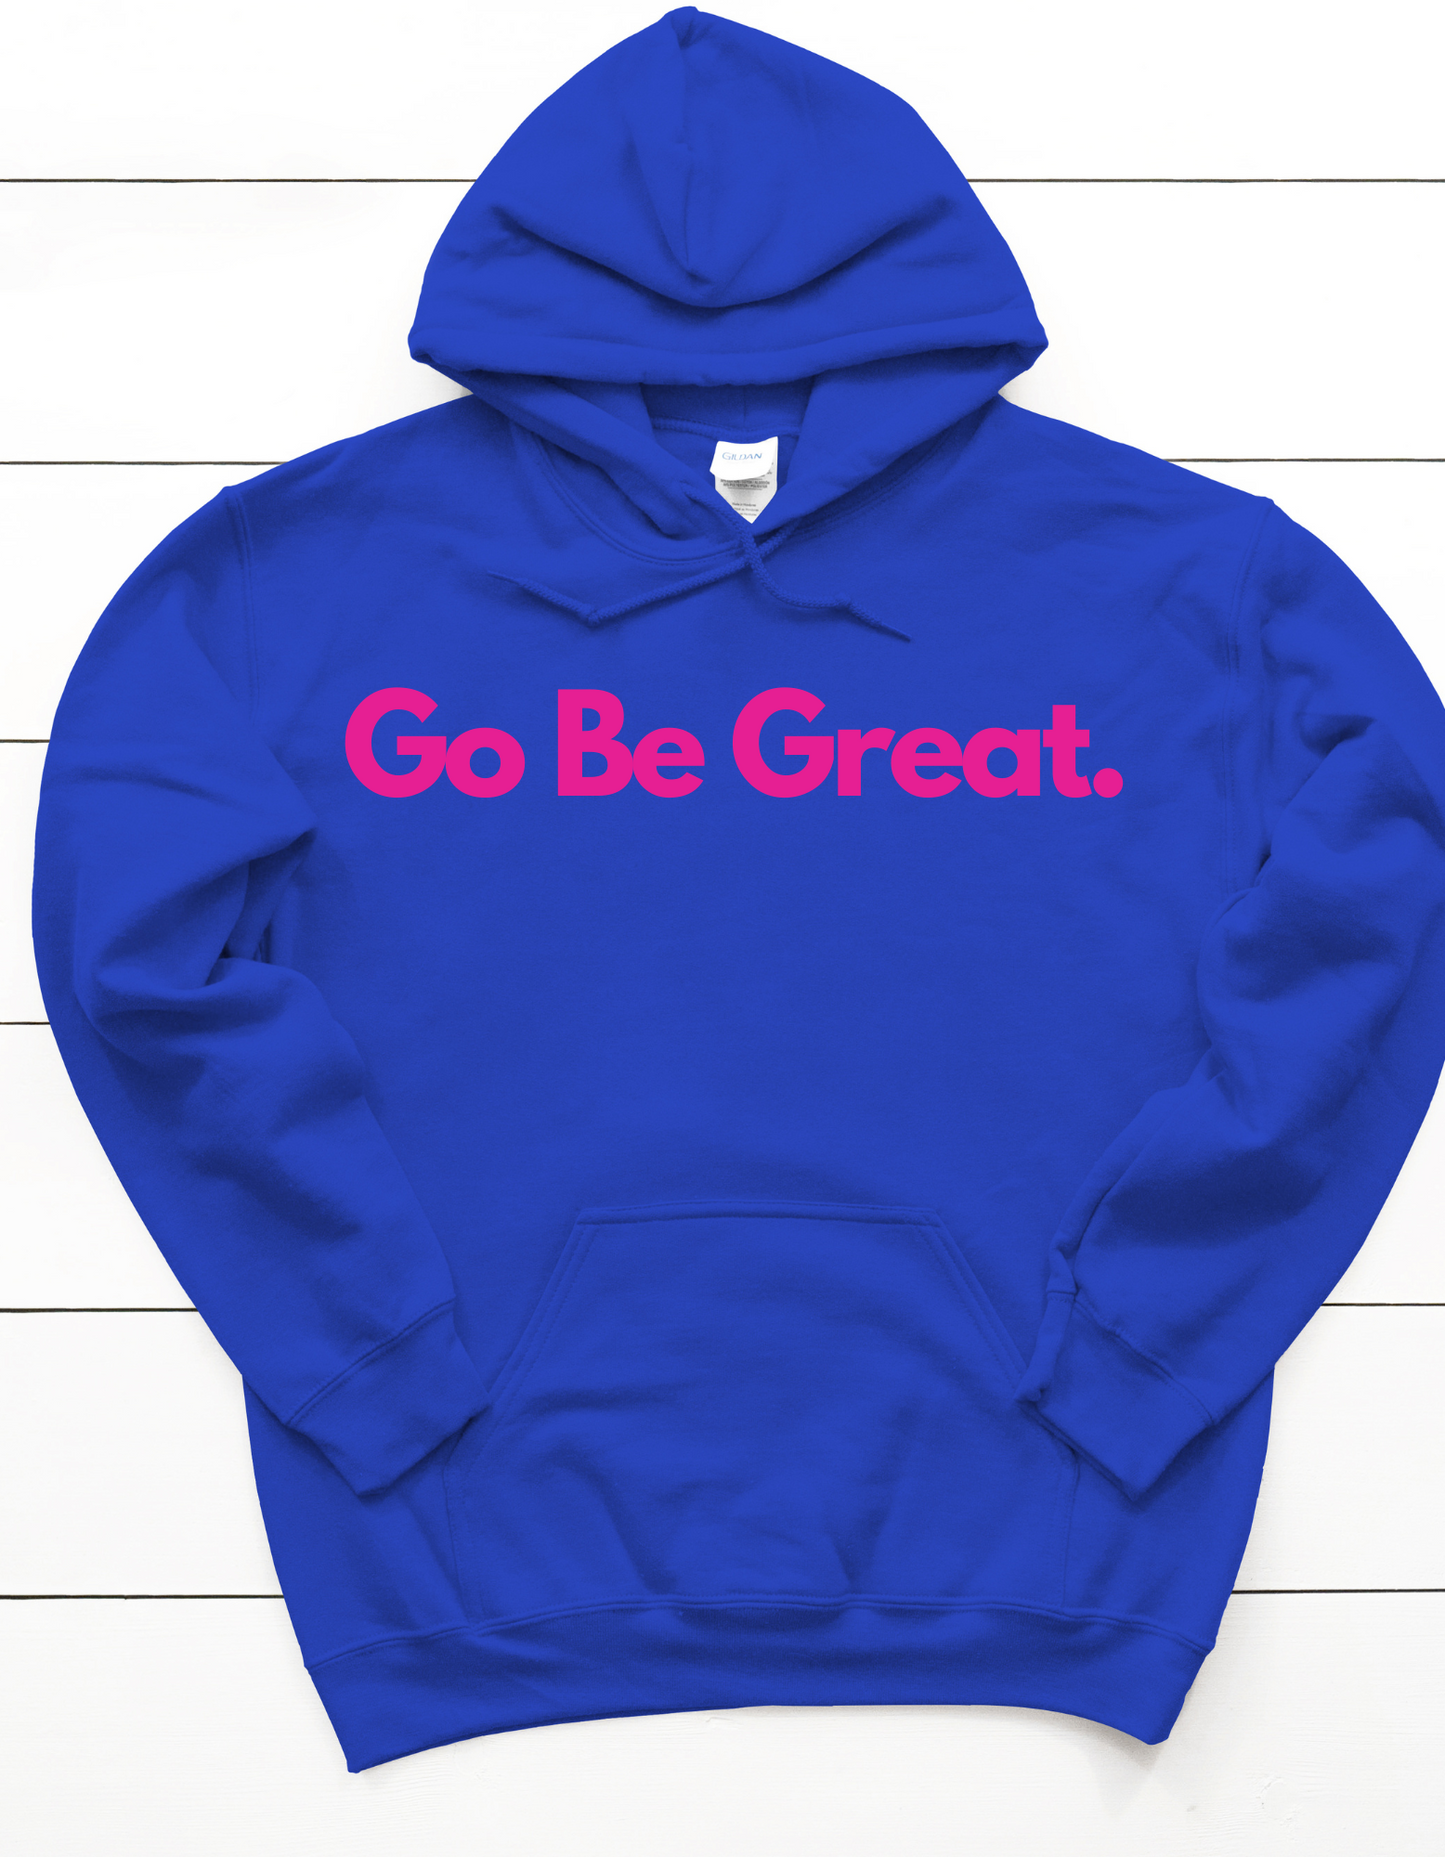 " Go be Great" sweatshirt